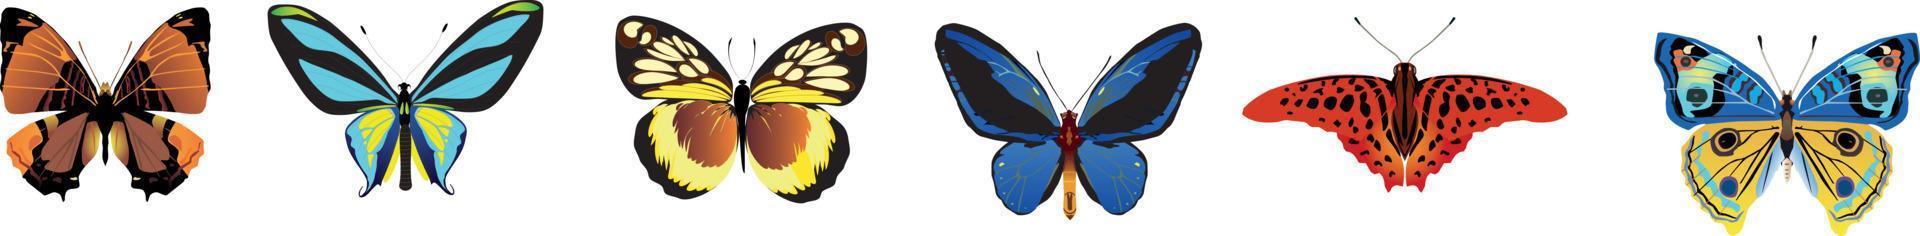 verschillende vlinders instellen. vector illustratie